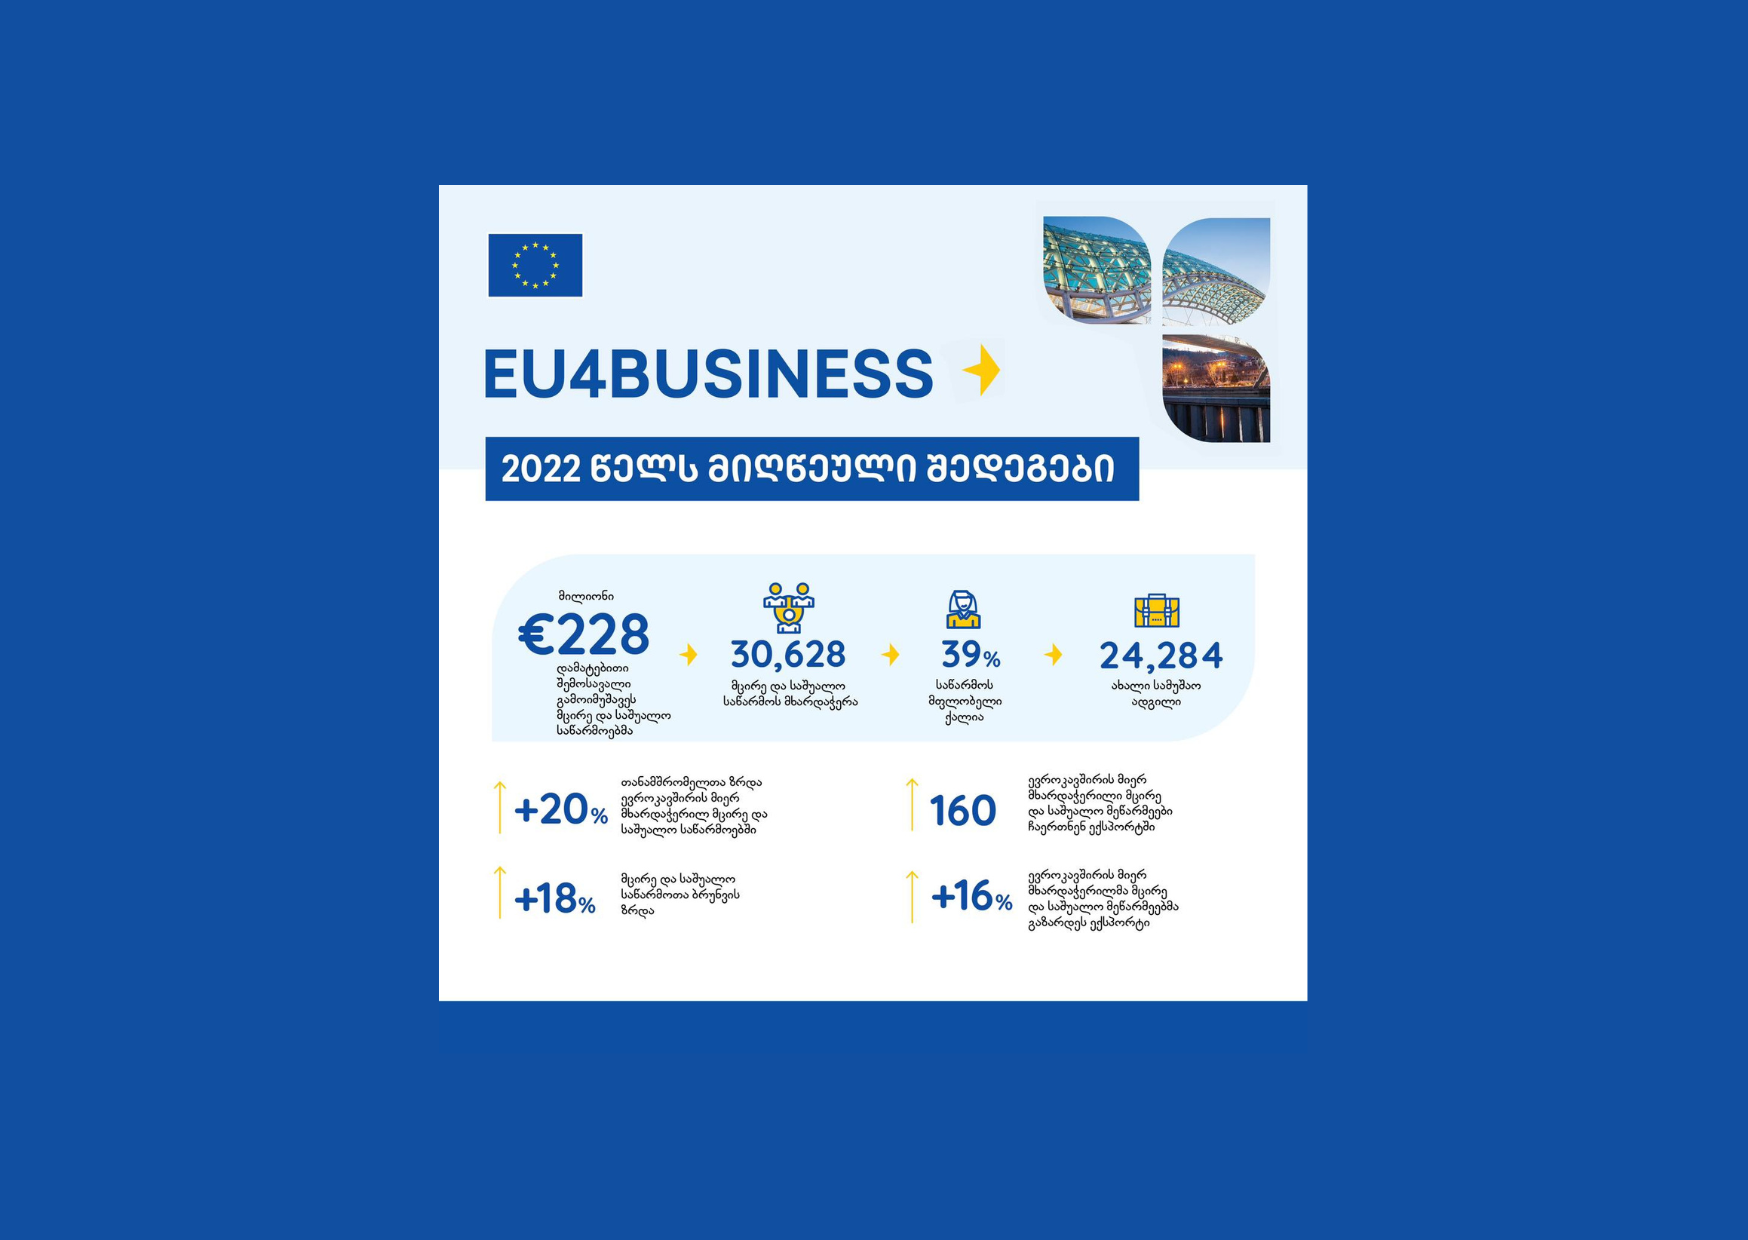 EU4Business programme